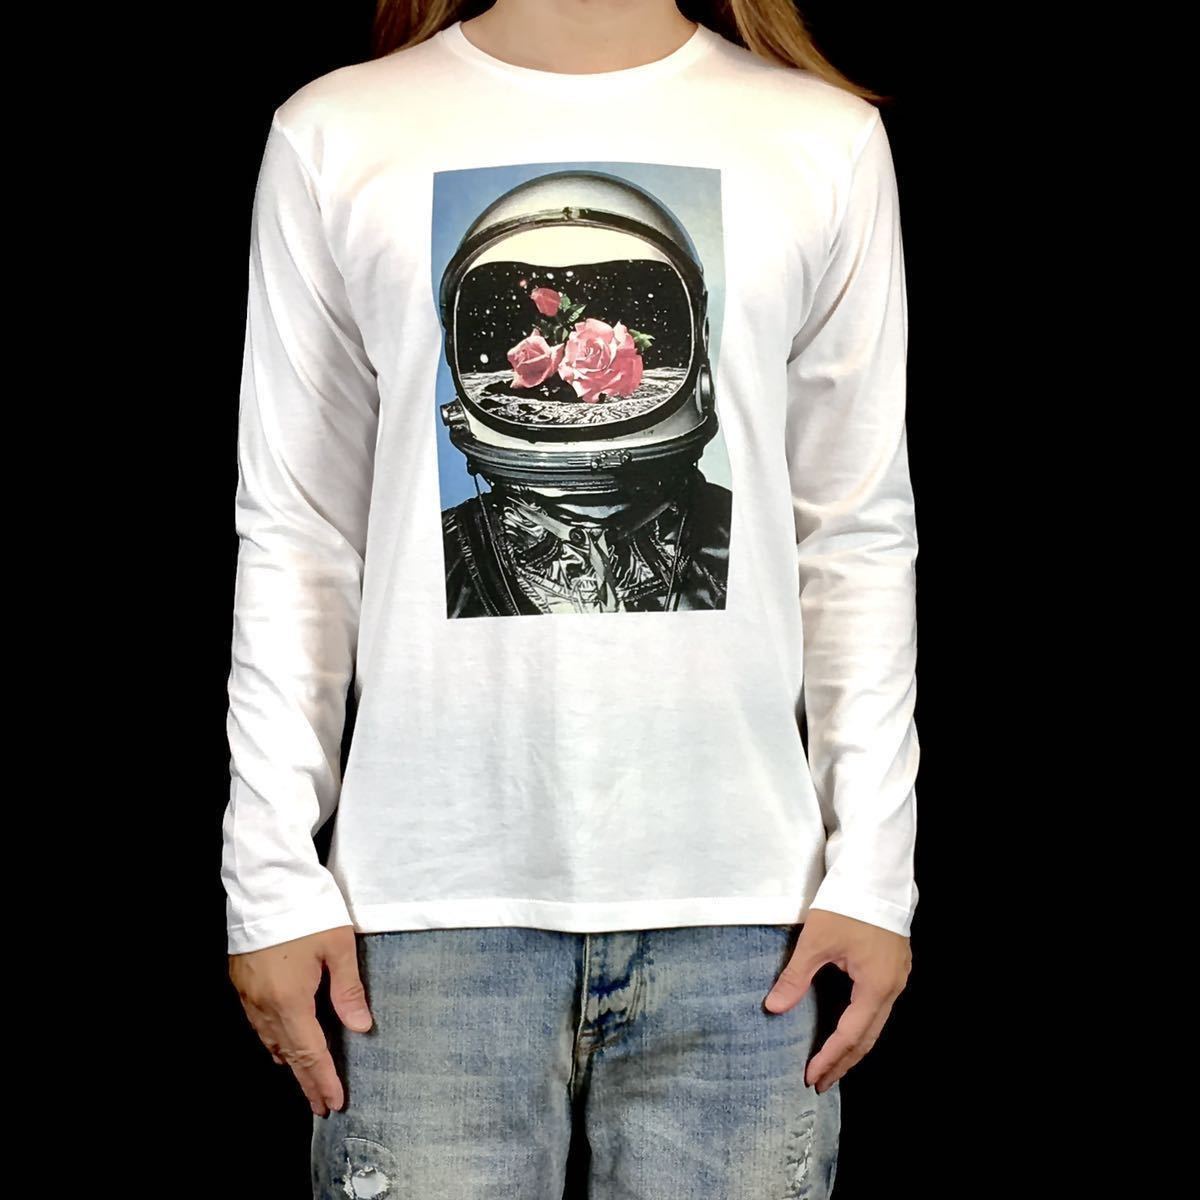 【良好品】 Mサイズ Tシャツ 長袖 ロンT コズミック レトロ 月面着陸 NASAアポロ計画 バラ 薔薇 アストロノーツ 宇宙飛行士 新品 タイト ビッグ スリム Mサイズ